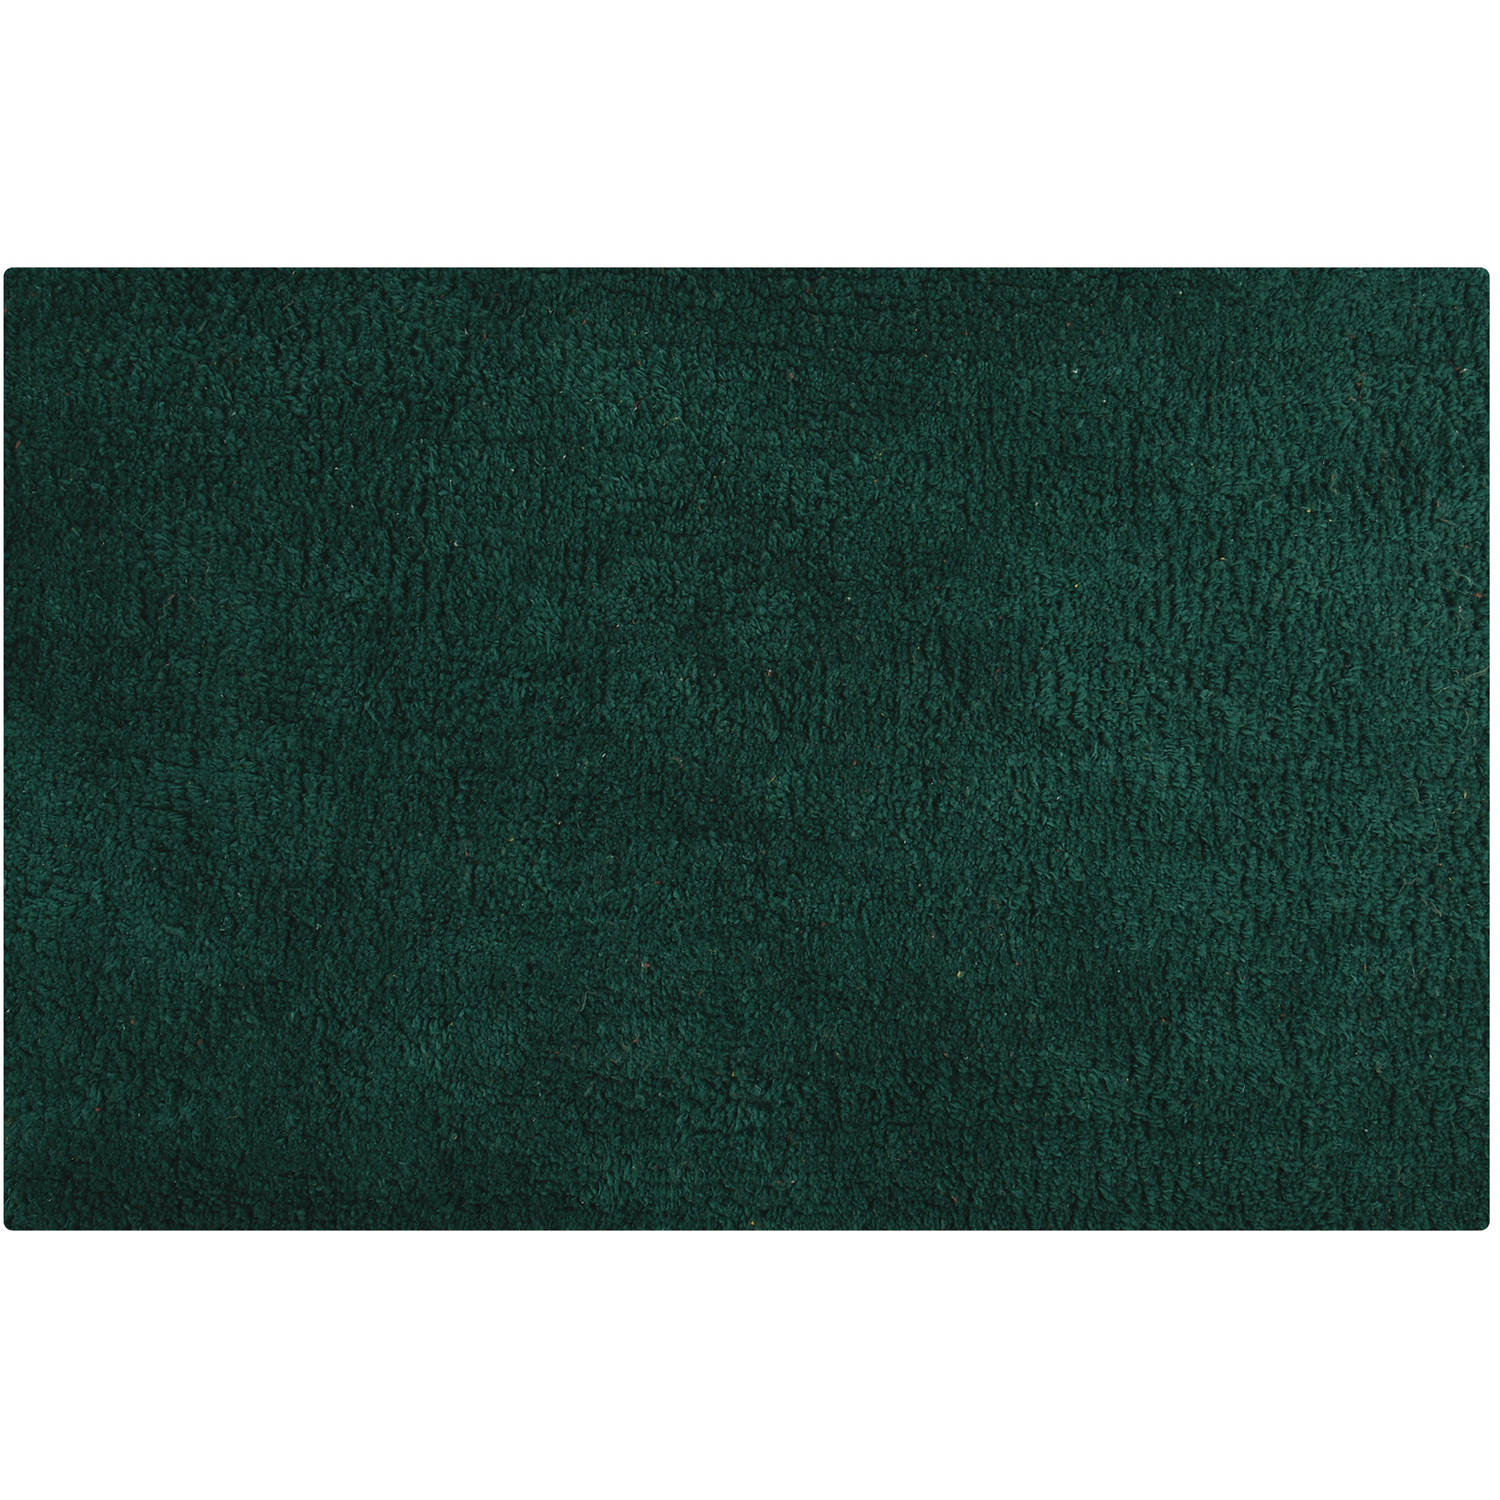 MSV Badkamerkleedje/badmat tapijtje - voor op de vloer - donkergroen - 45 x 70 cm - polyester/katoen